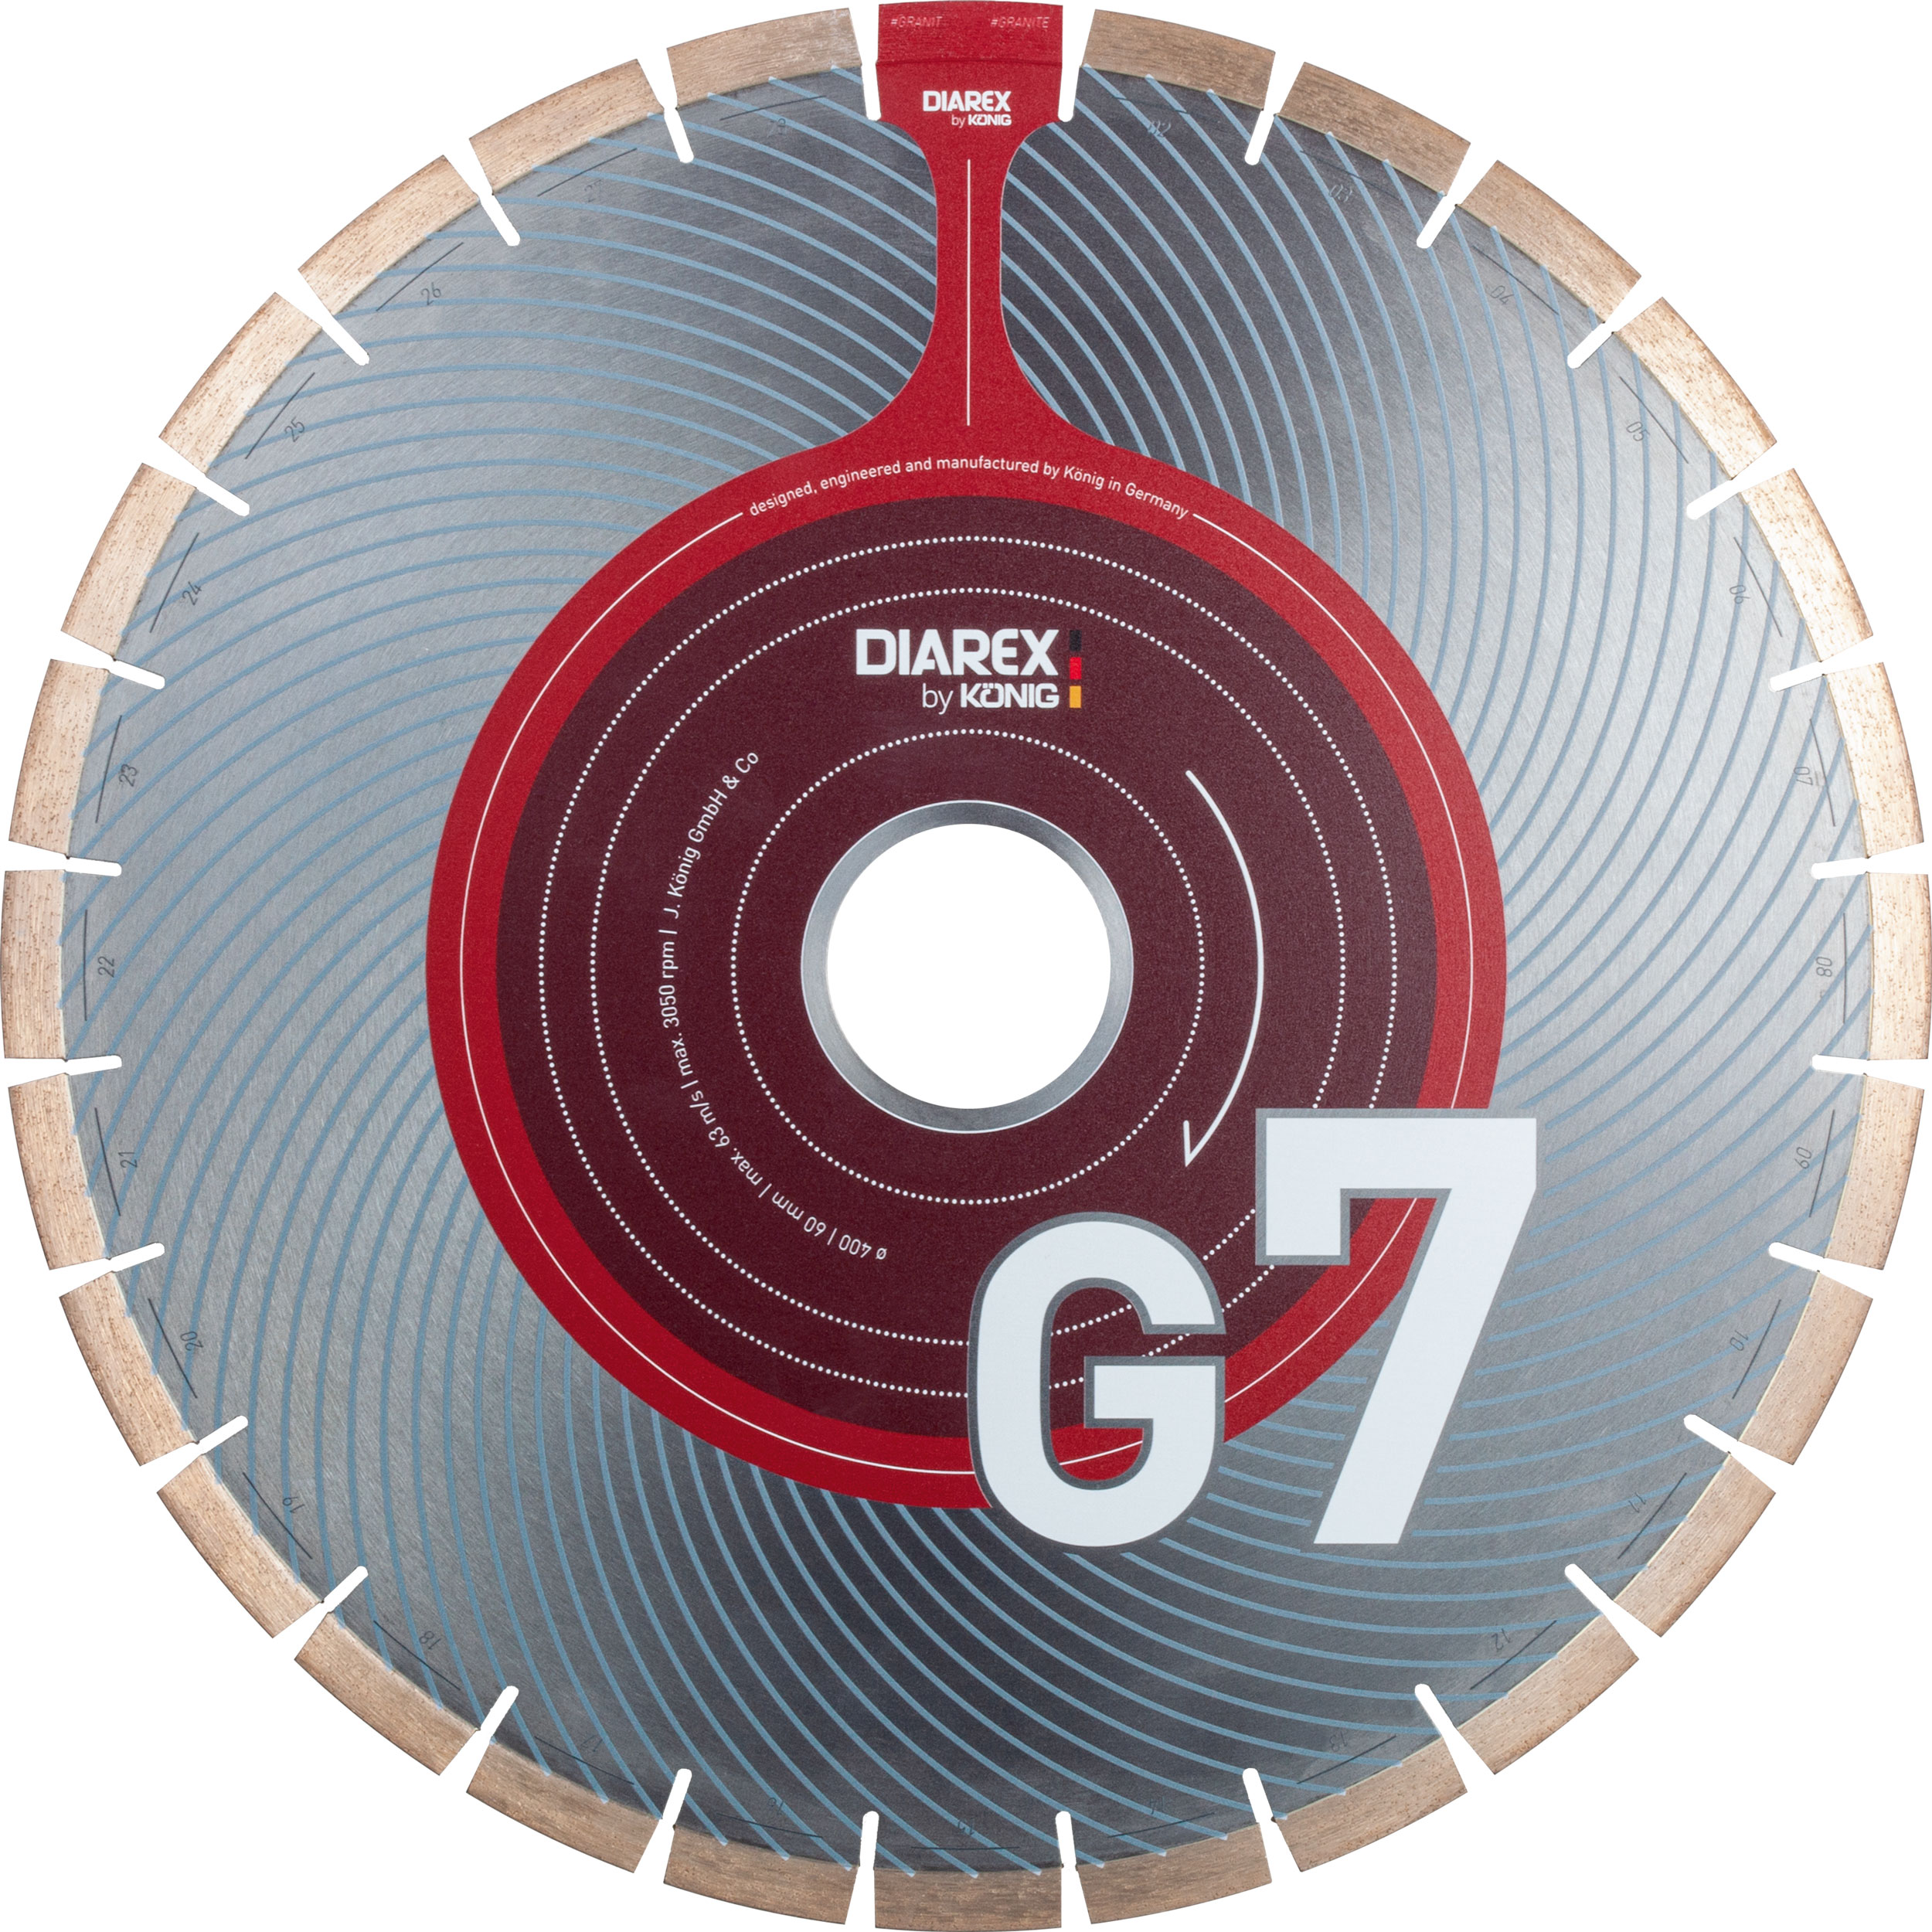 DIAREX Trennscheibe G7 ø 400 mm | Bohrung 60 mm